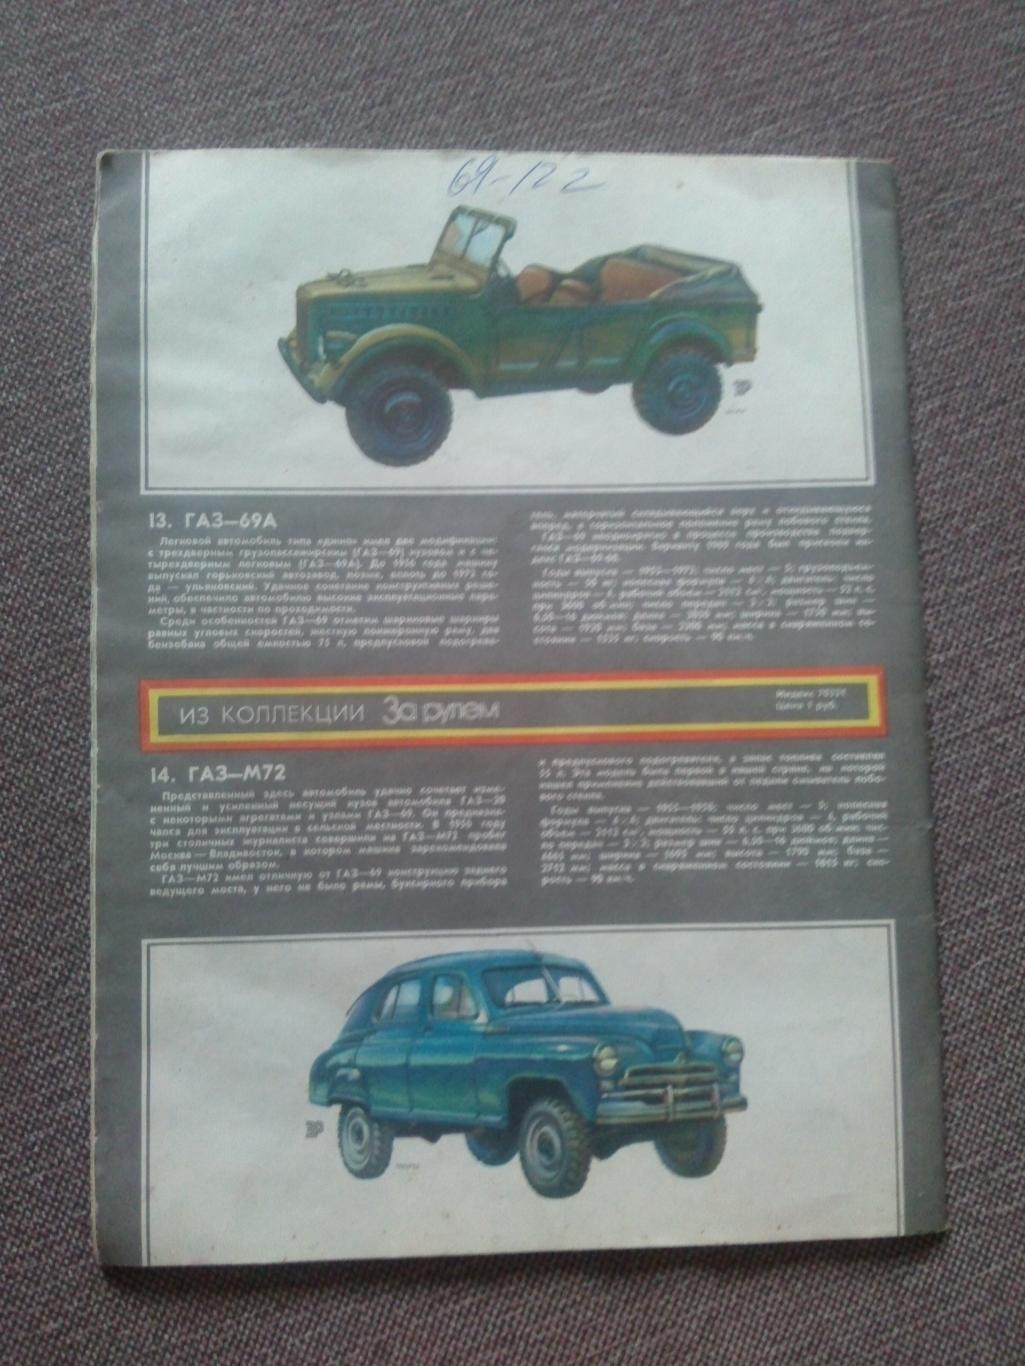 Журнал СССР :За рулем№ 7 ( июль ) 1982 г. ( Автомобиль , транспорт ) 1